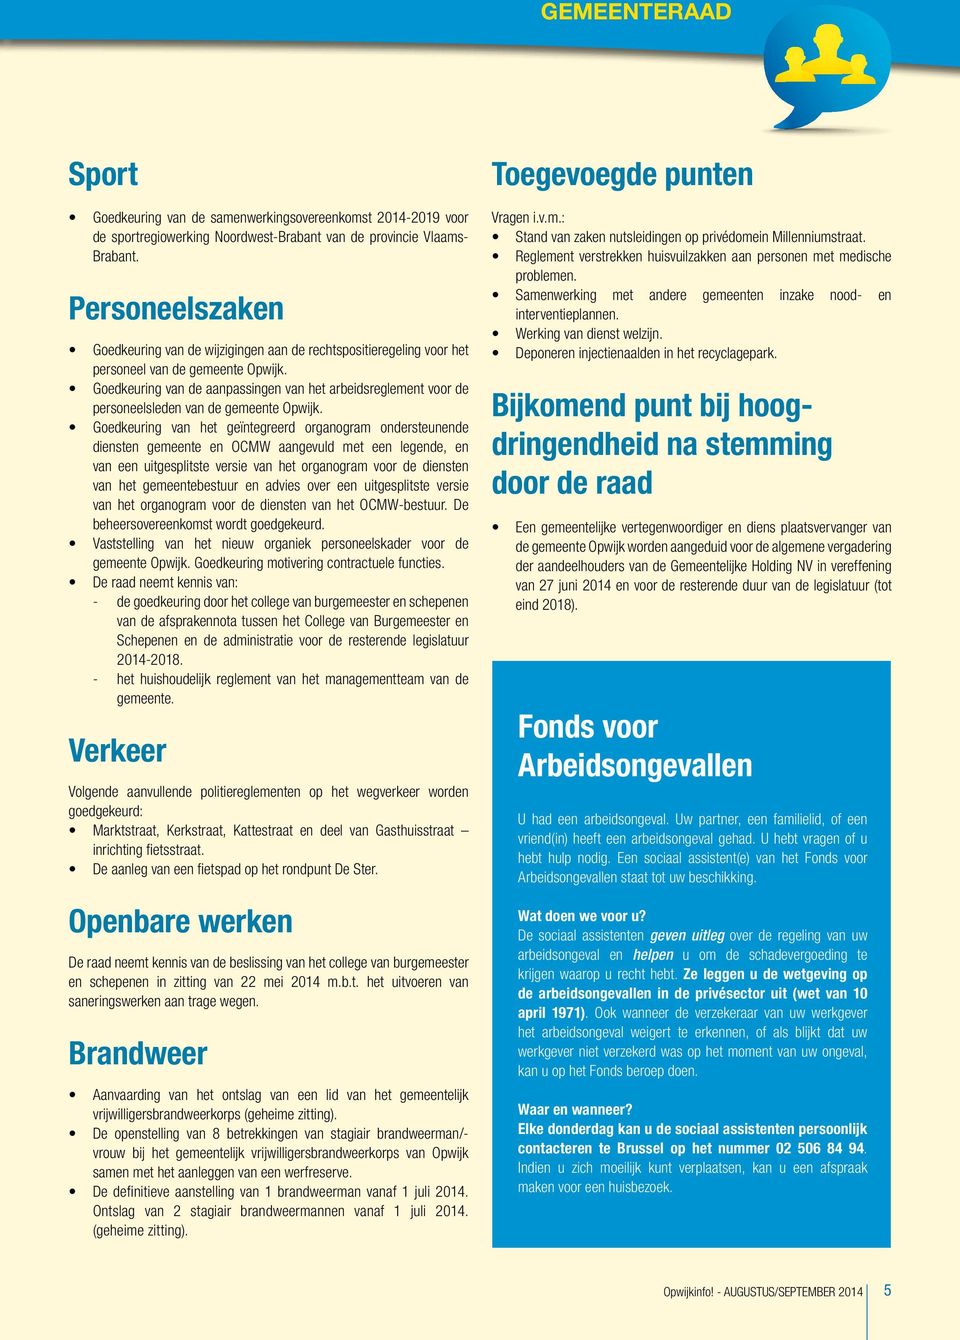 Goedkeuring van de aanpassingen van het arbeidsreglement voor de personeelsleden van de gemeente Opwijk.